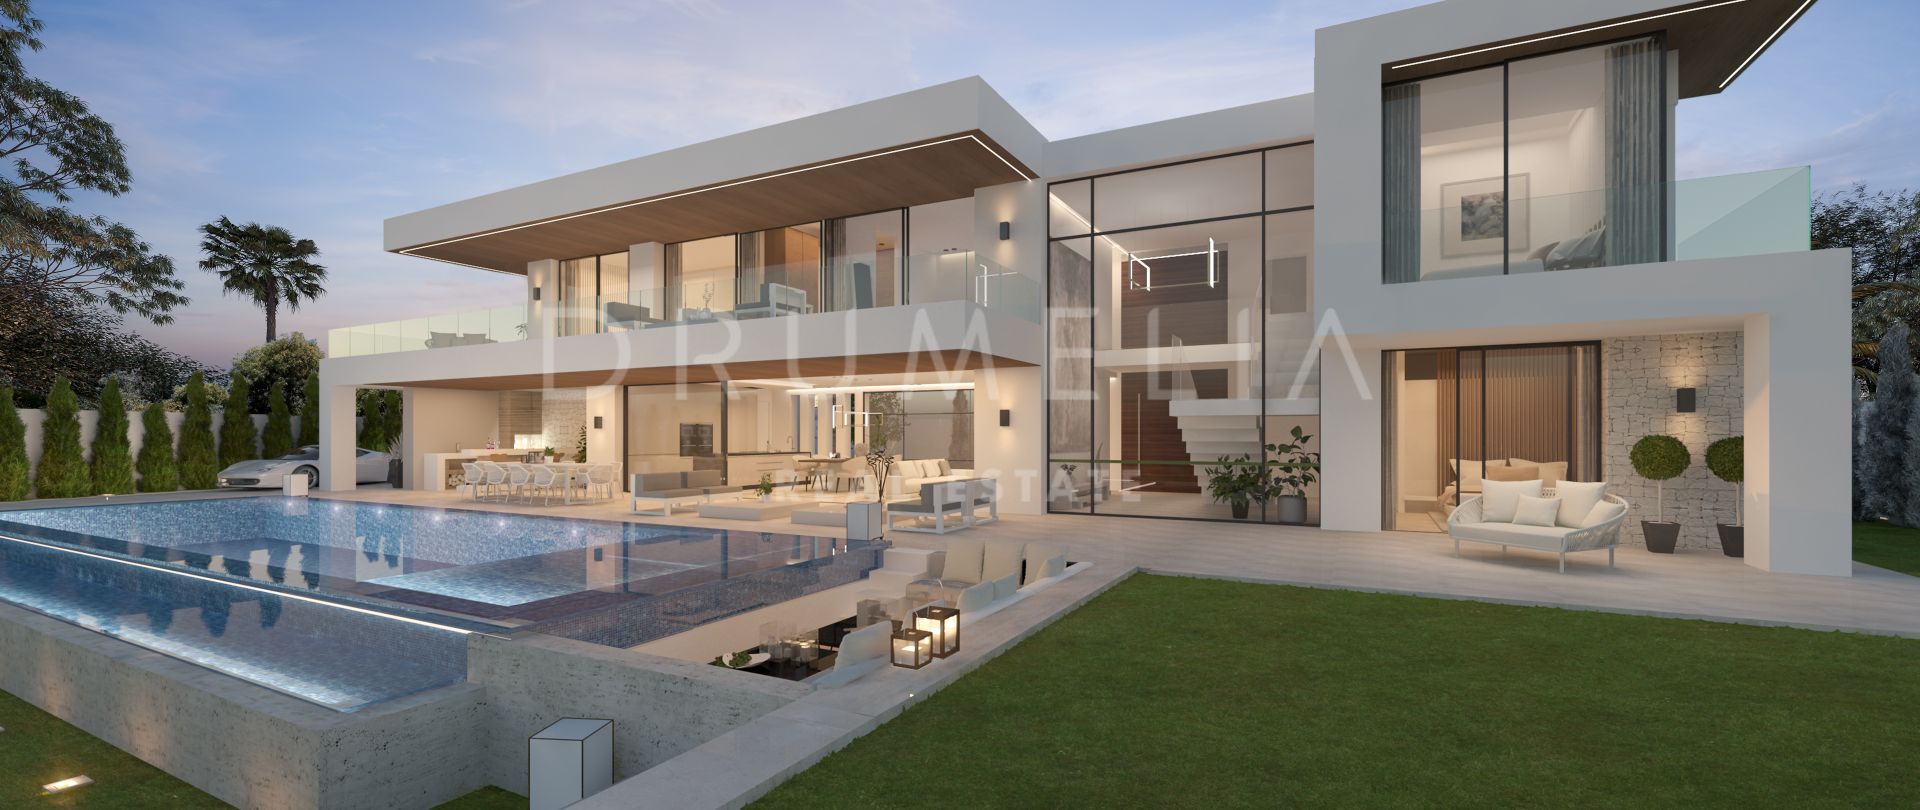 Schöne moderne Villa in der Nähe des Strandes und des Golfplatzes in Guadalmina Baja